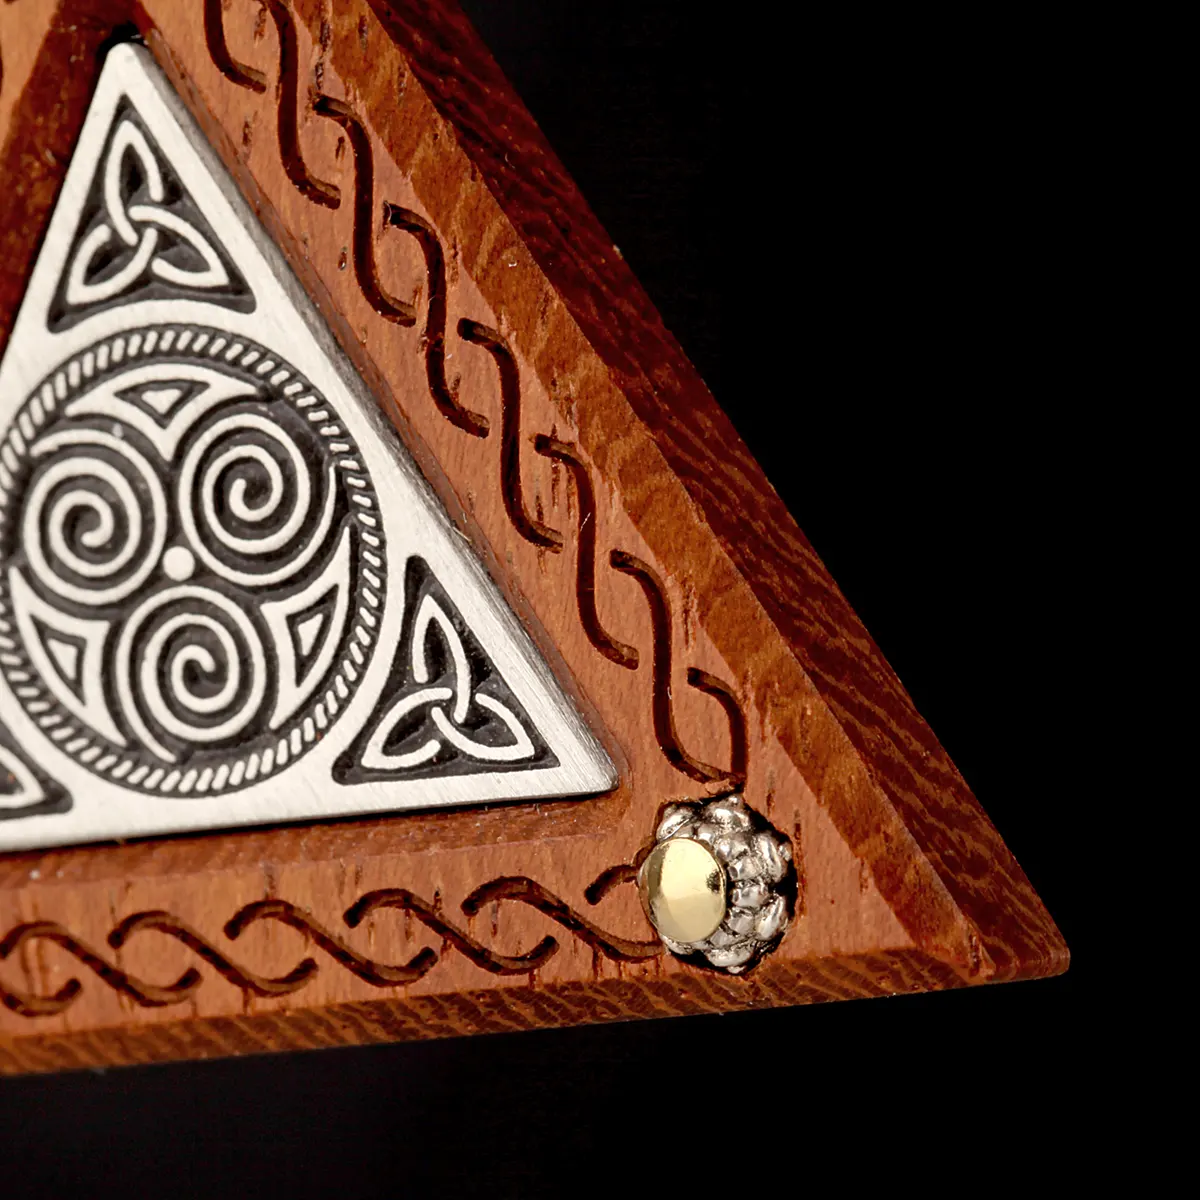 Triangle Celtic Spirals - Walnussholz Anhänger mit keltischen Spiralen und Triskelen